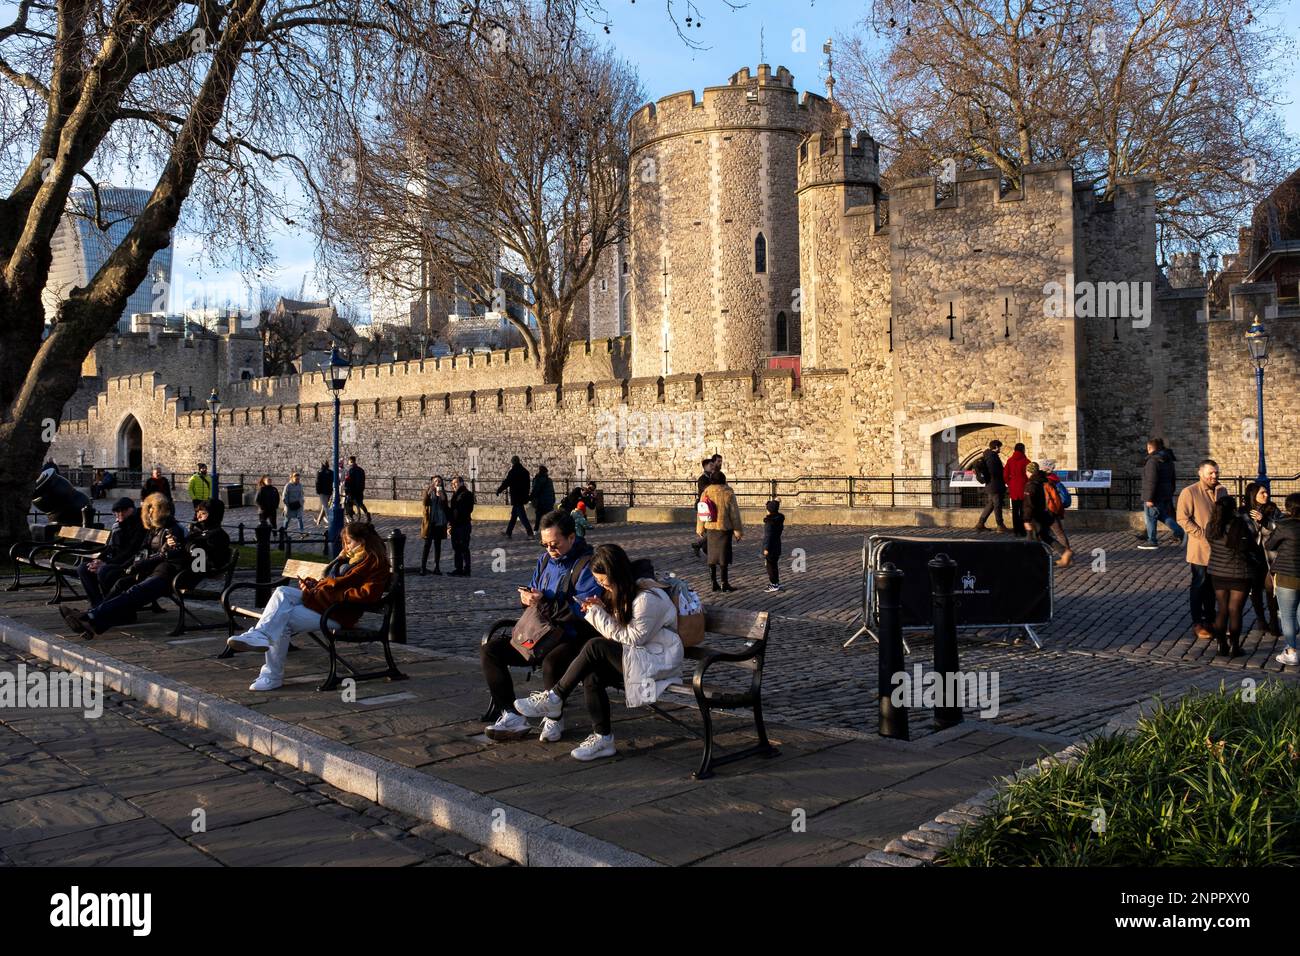 Touristen im Tower of London am 5. Februar 2023 in London, Großbritannien. Der Tower of London, offiziell sein königlicher Palast und die Festung des Tower of London, ist ein historisches Schloss, das Ende 1066 im Rahmen der normannischen Eroberung von England gegründet wurde. Stockfoto